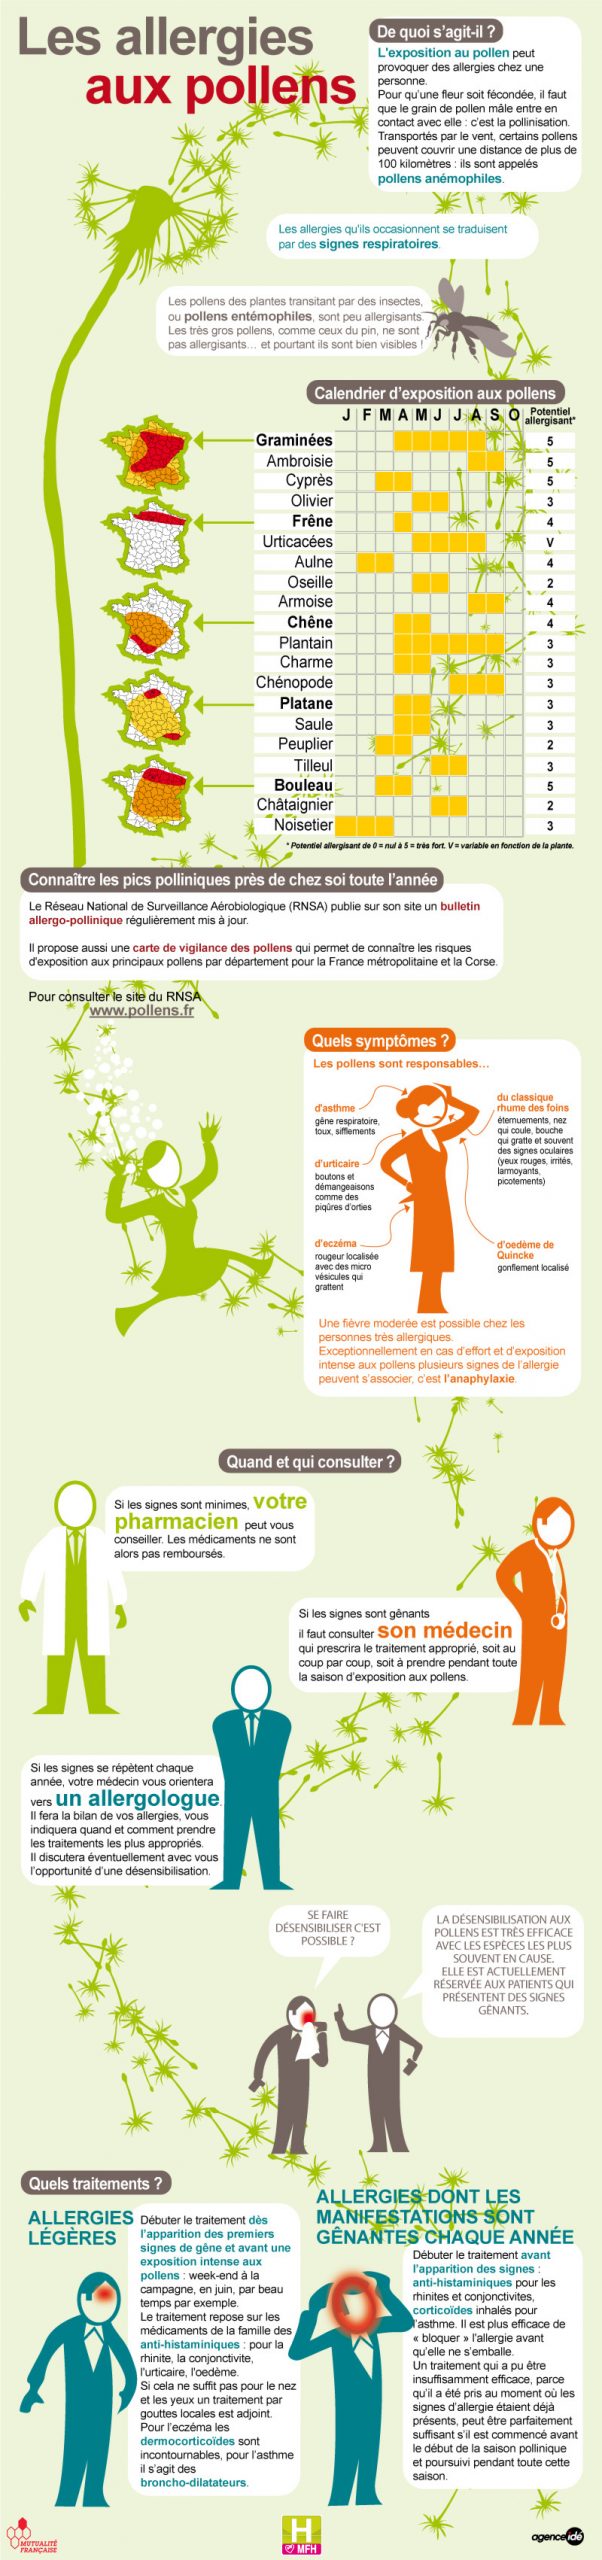 infographie_les_allergies_aux_pollens